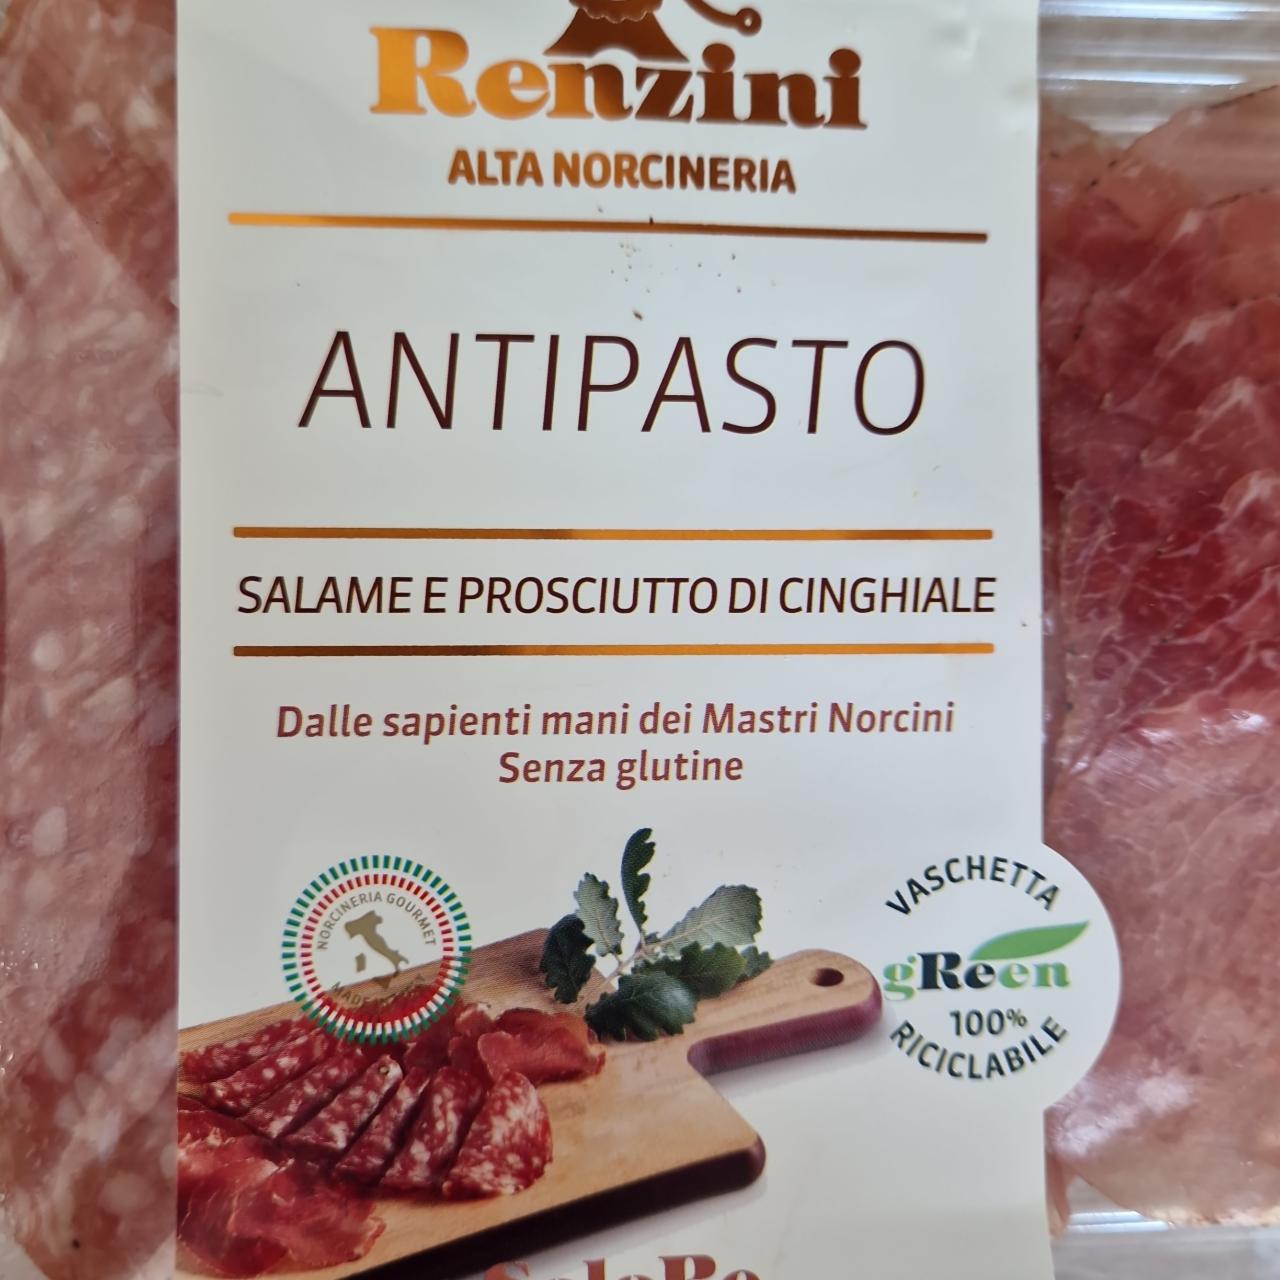 Fotografie - Antipasto Salame e Prosciutto di Cinghiale Renzini